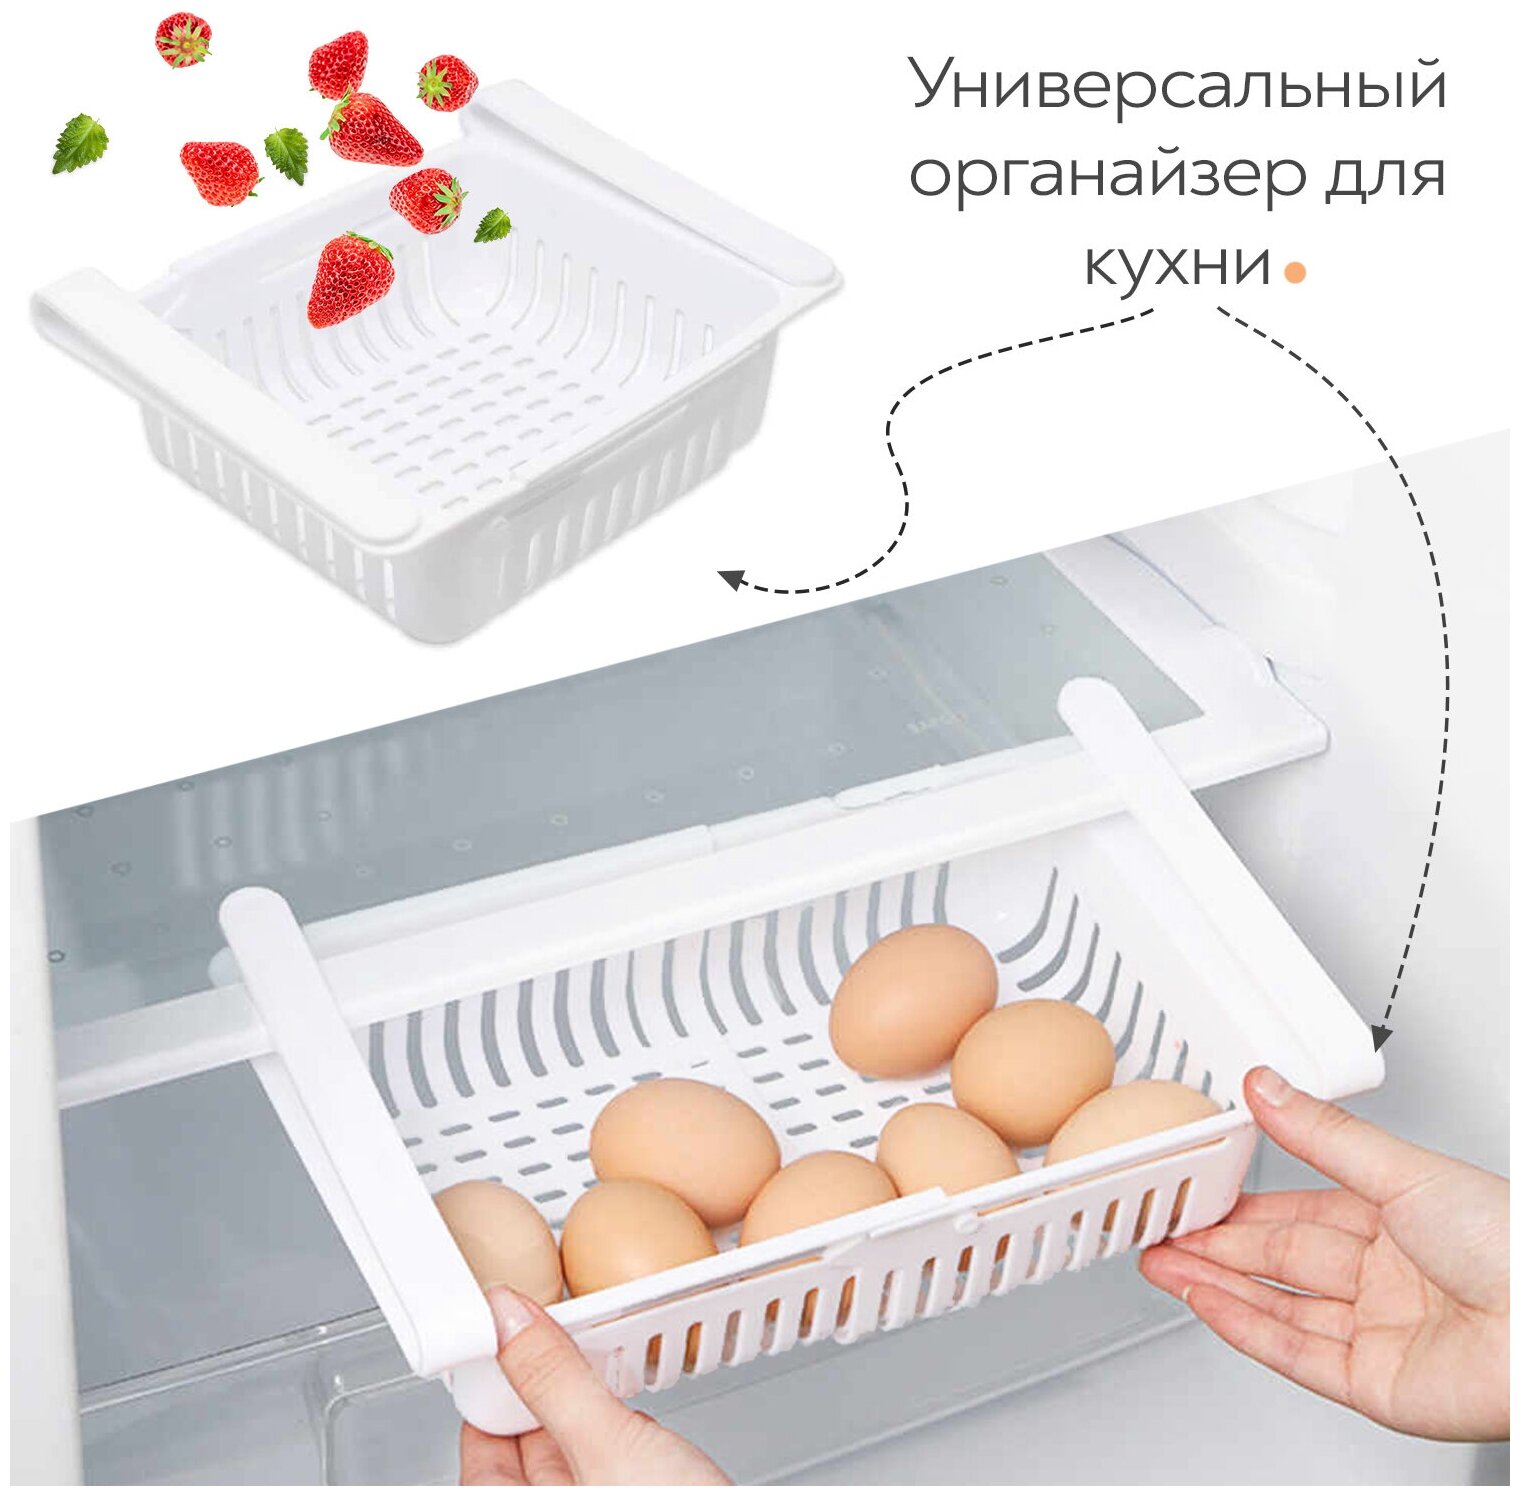 Раздвижной контейнер SimpleShop, органайзер для холодильника / Полка в холодильник / Лоток для холодильника, 1 шт белый